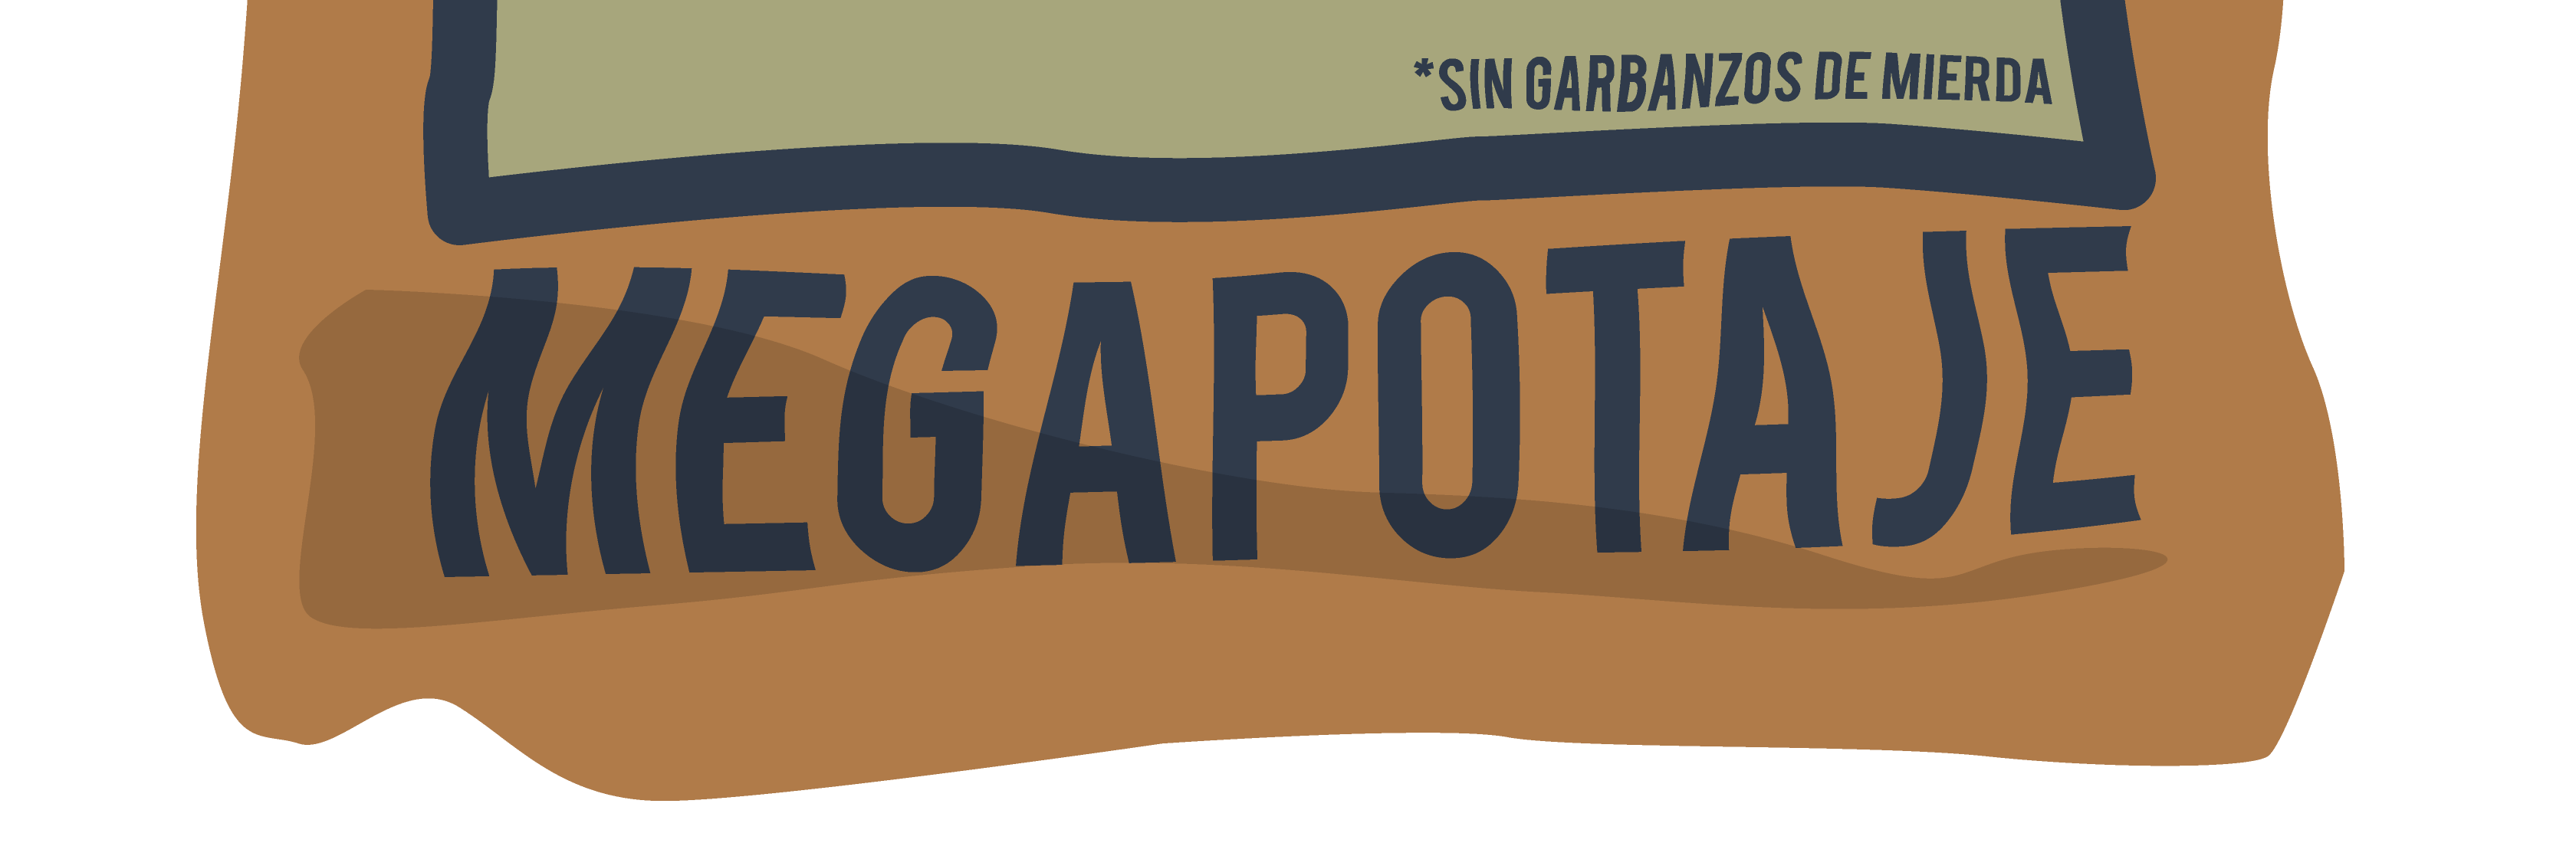 Garbanzo García